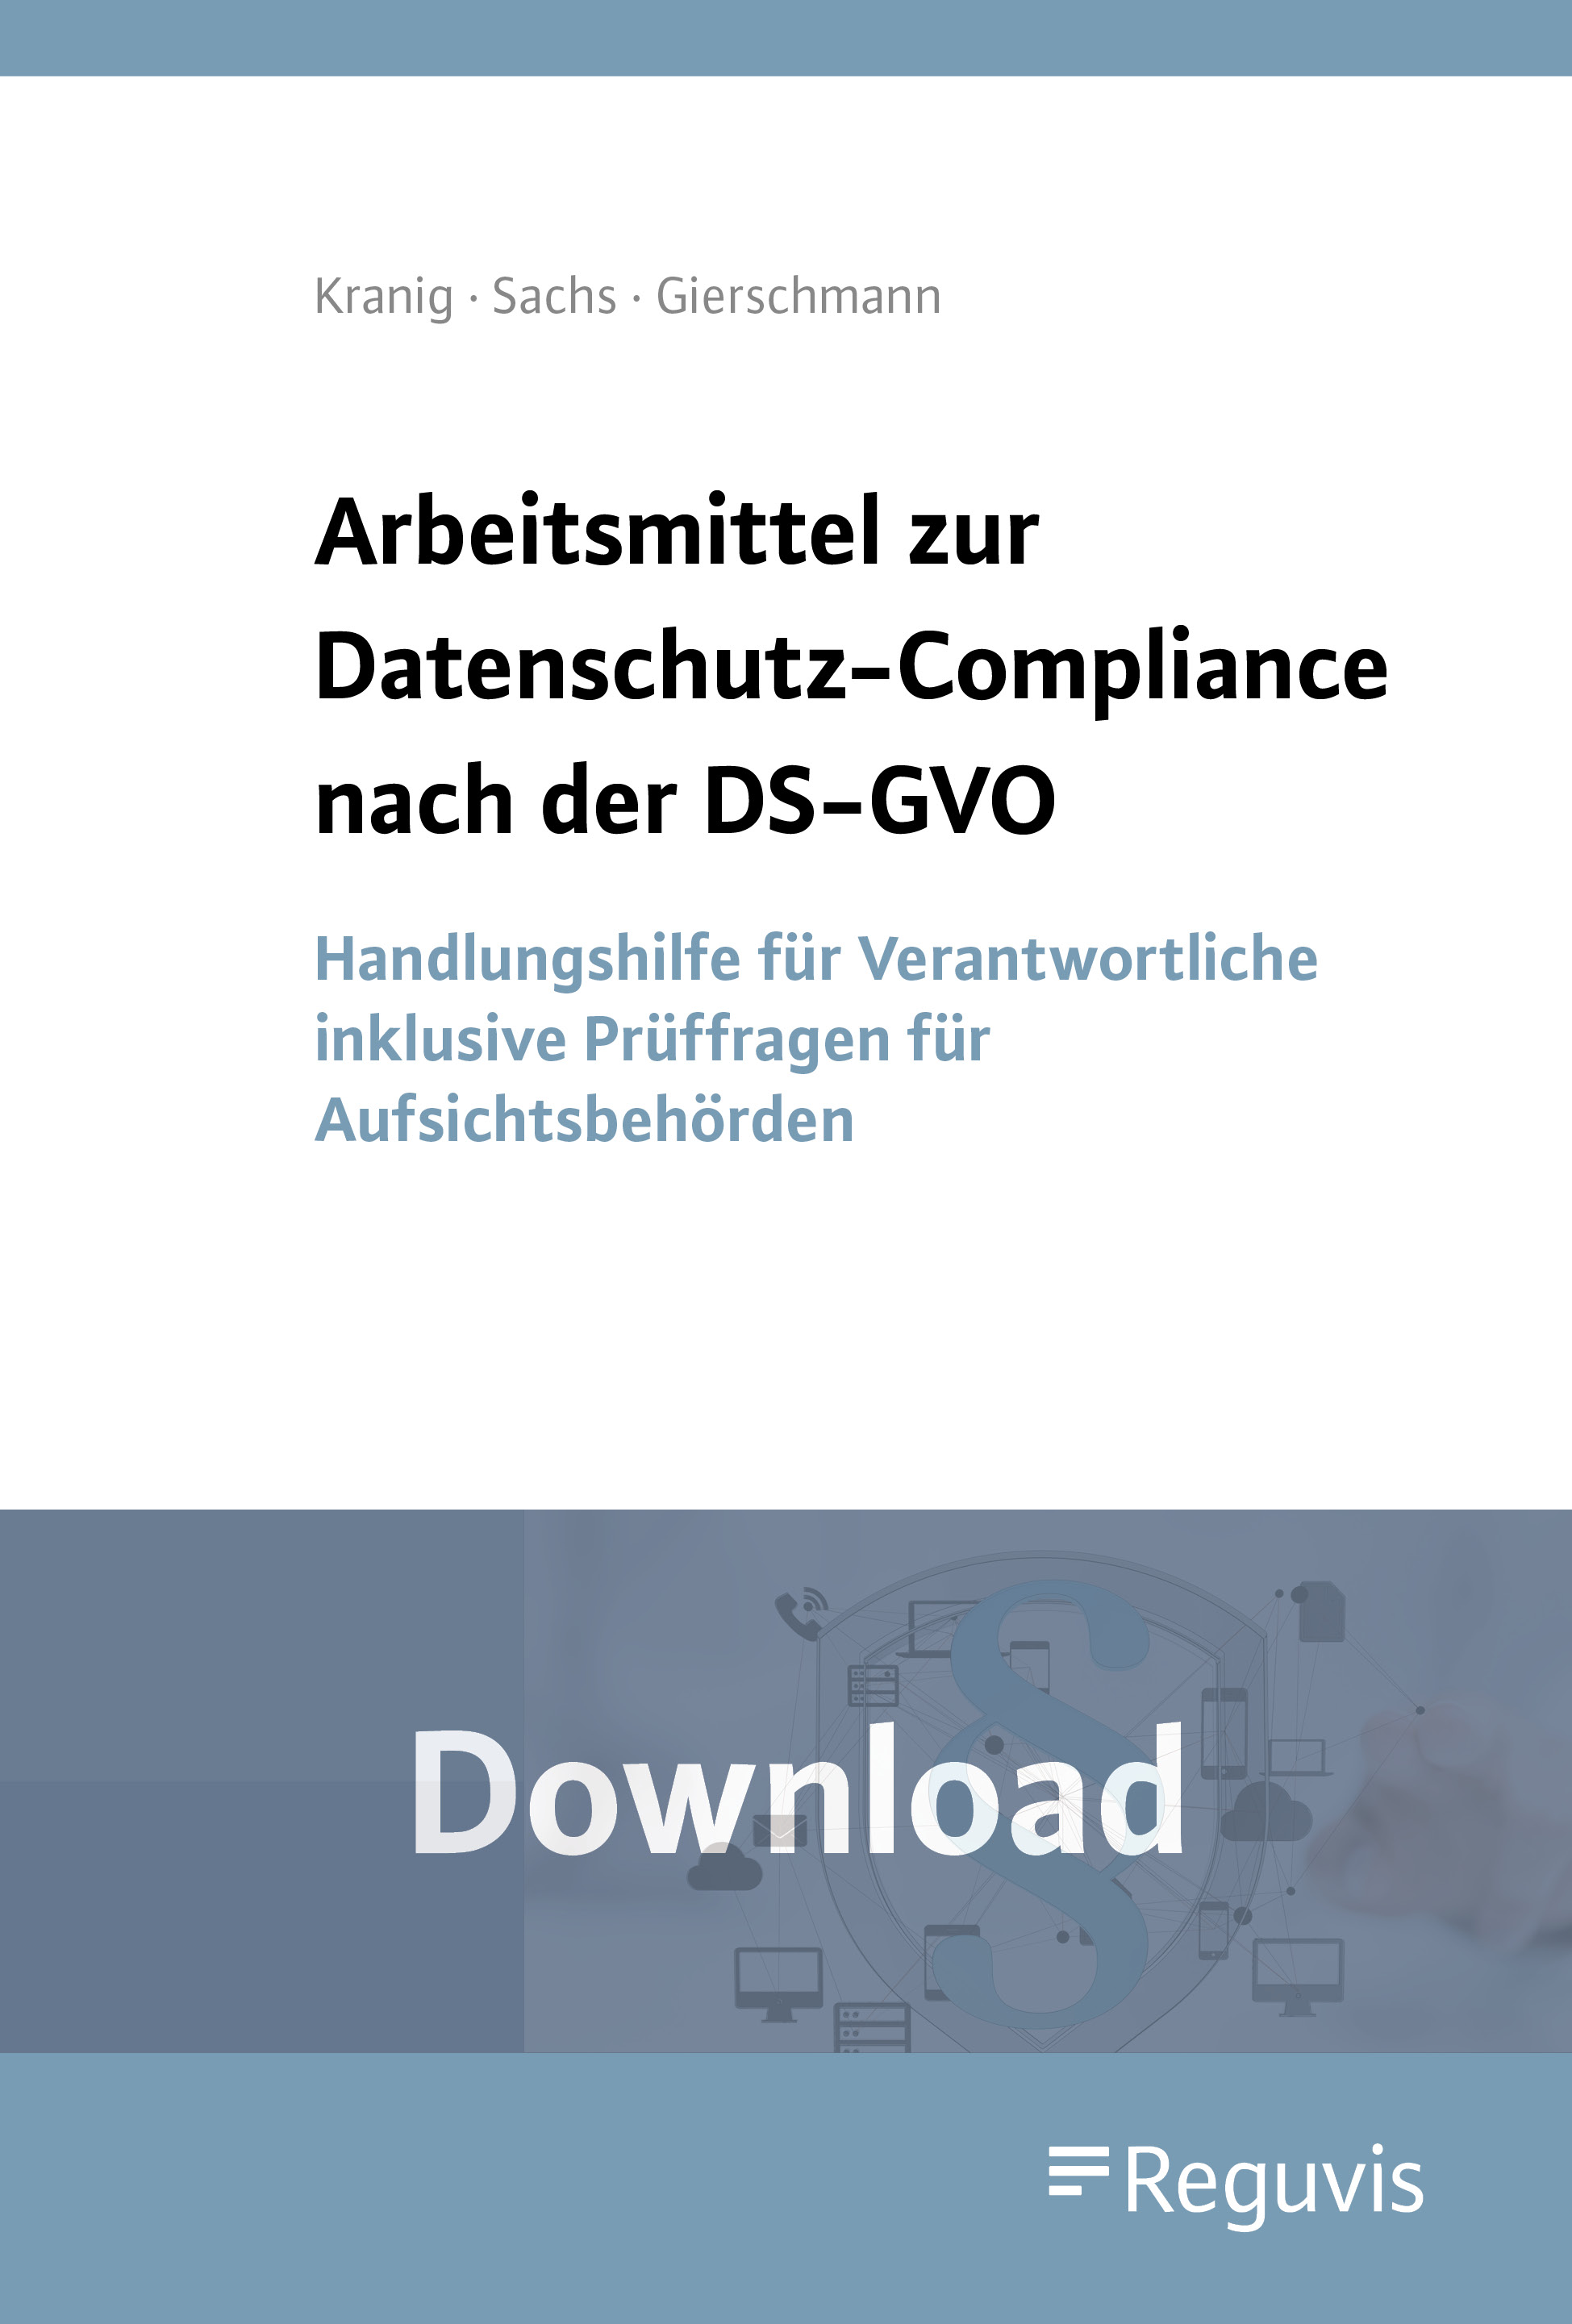 Arbeitsmittel zur Datenschutz-Compliance nach der DS-GVO - Download